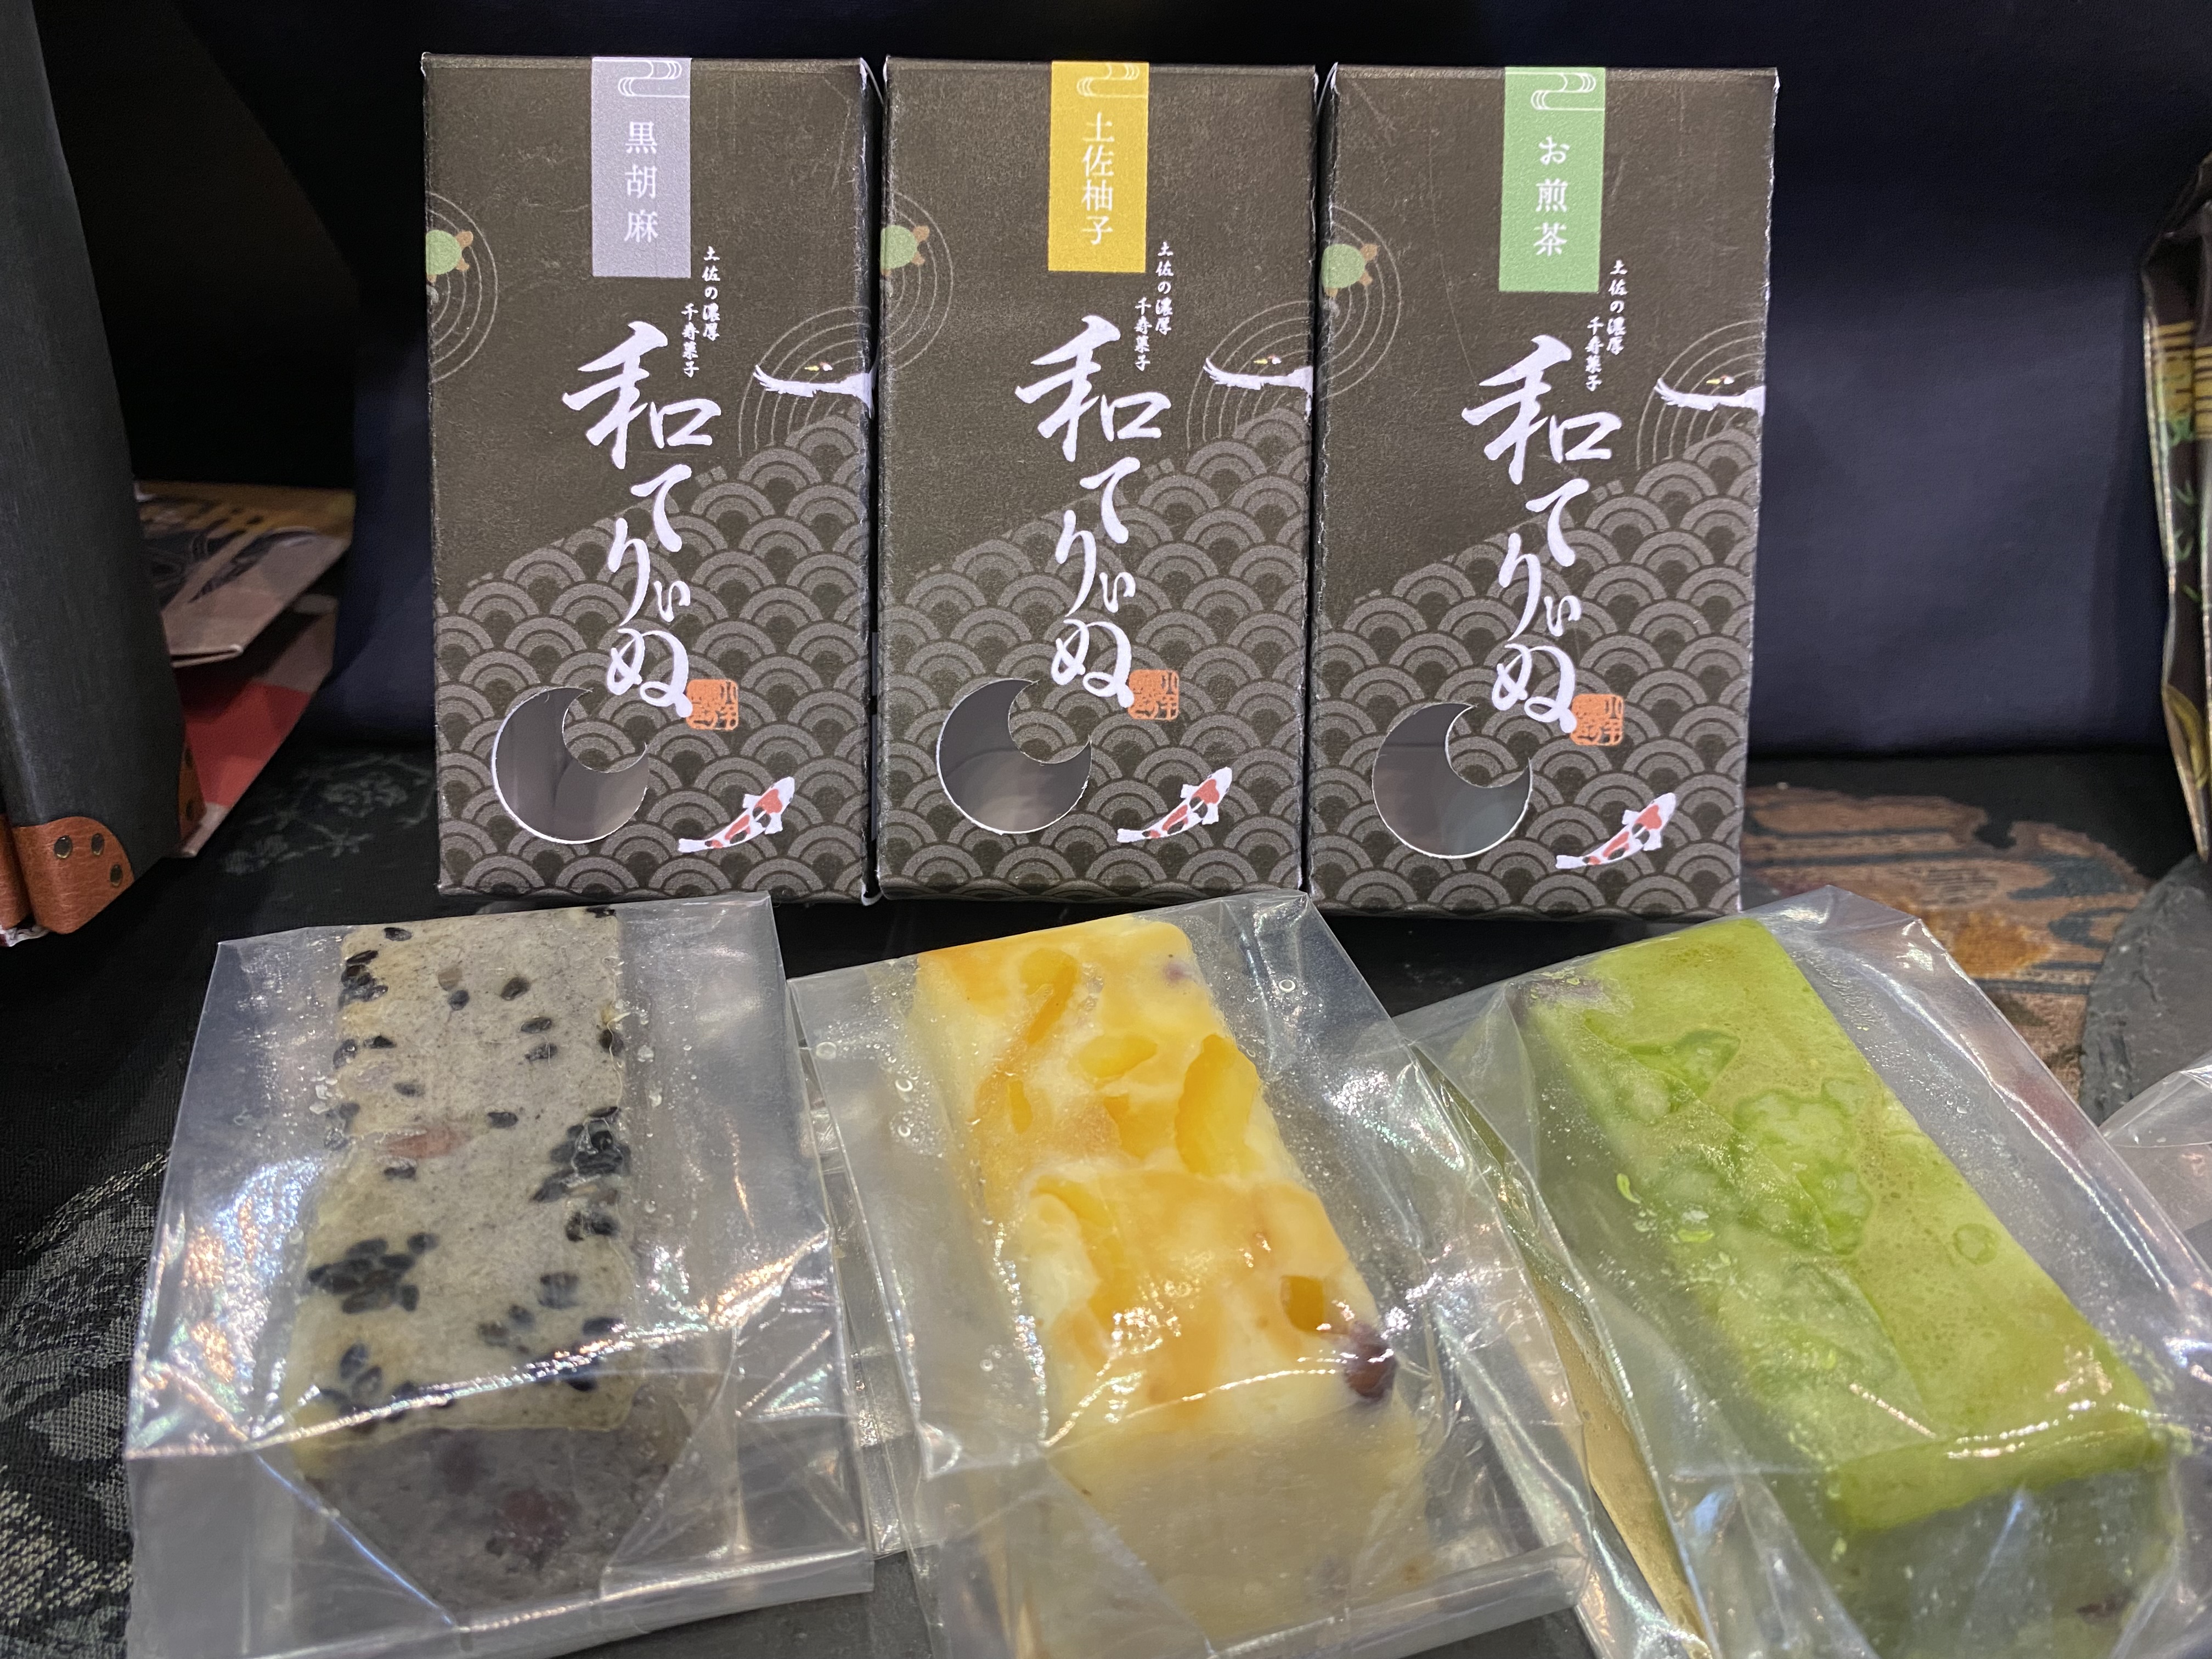 土佐の濃厚千寿菓子『和てりぃぬ』 3種